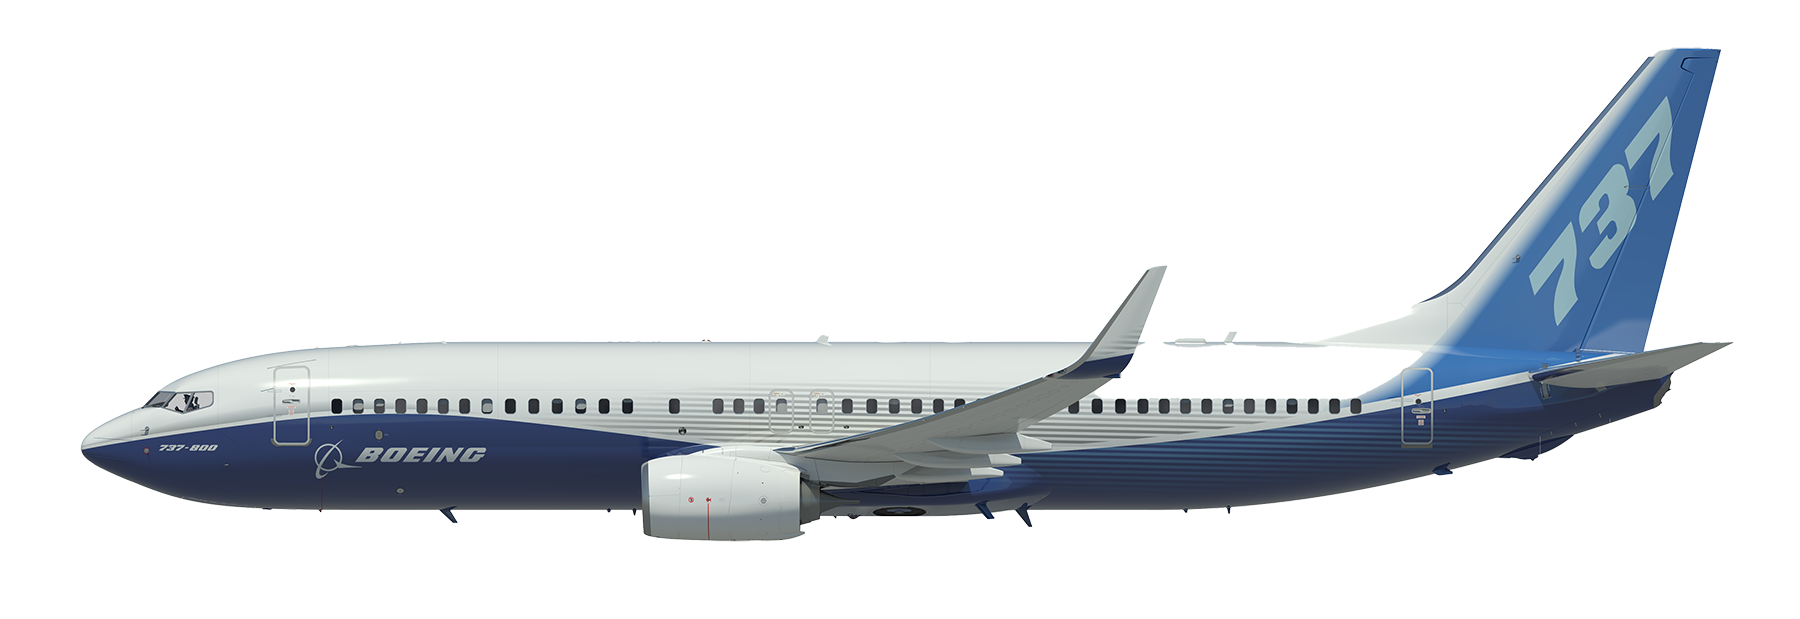 TBC-737-800-side-L-in-flight